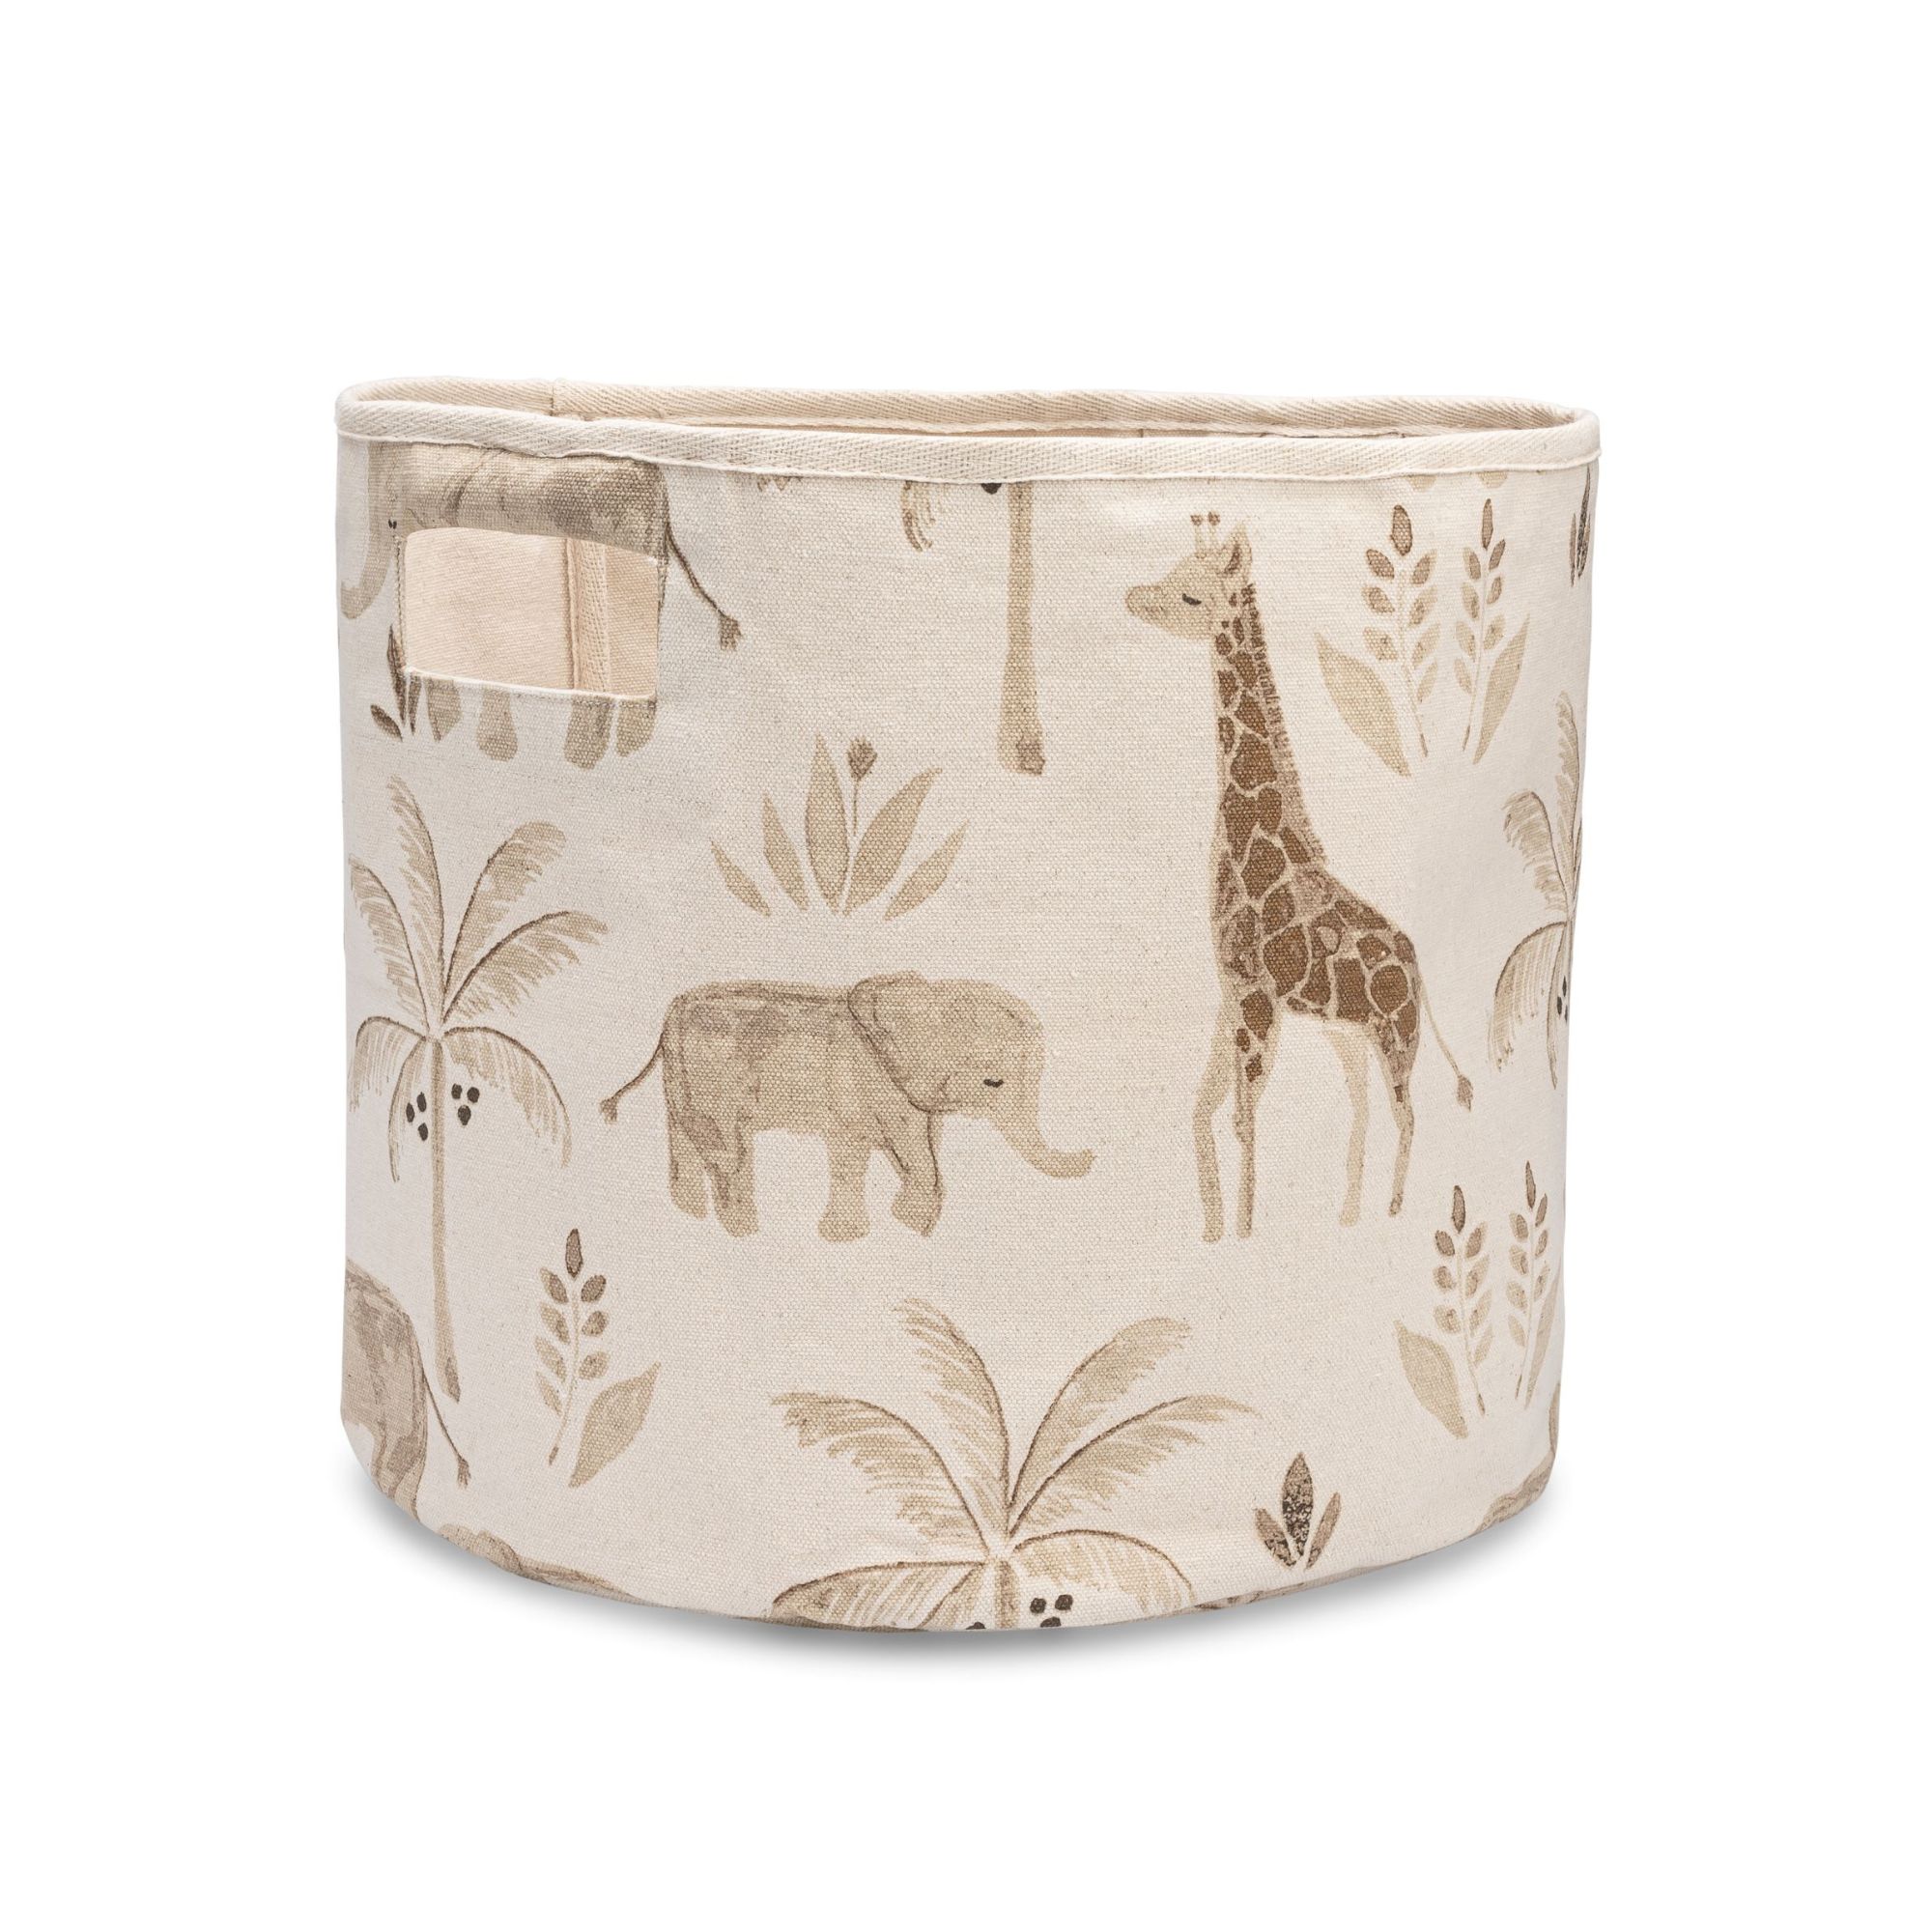 Beige storage bin for nursery with animal design